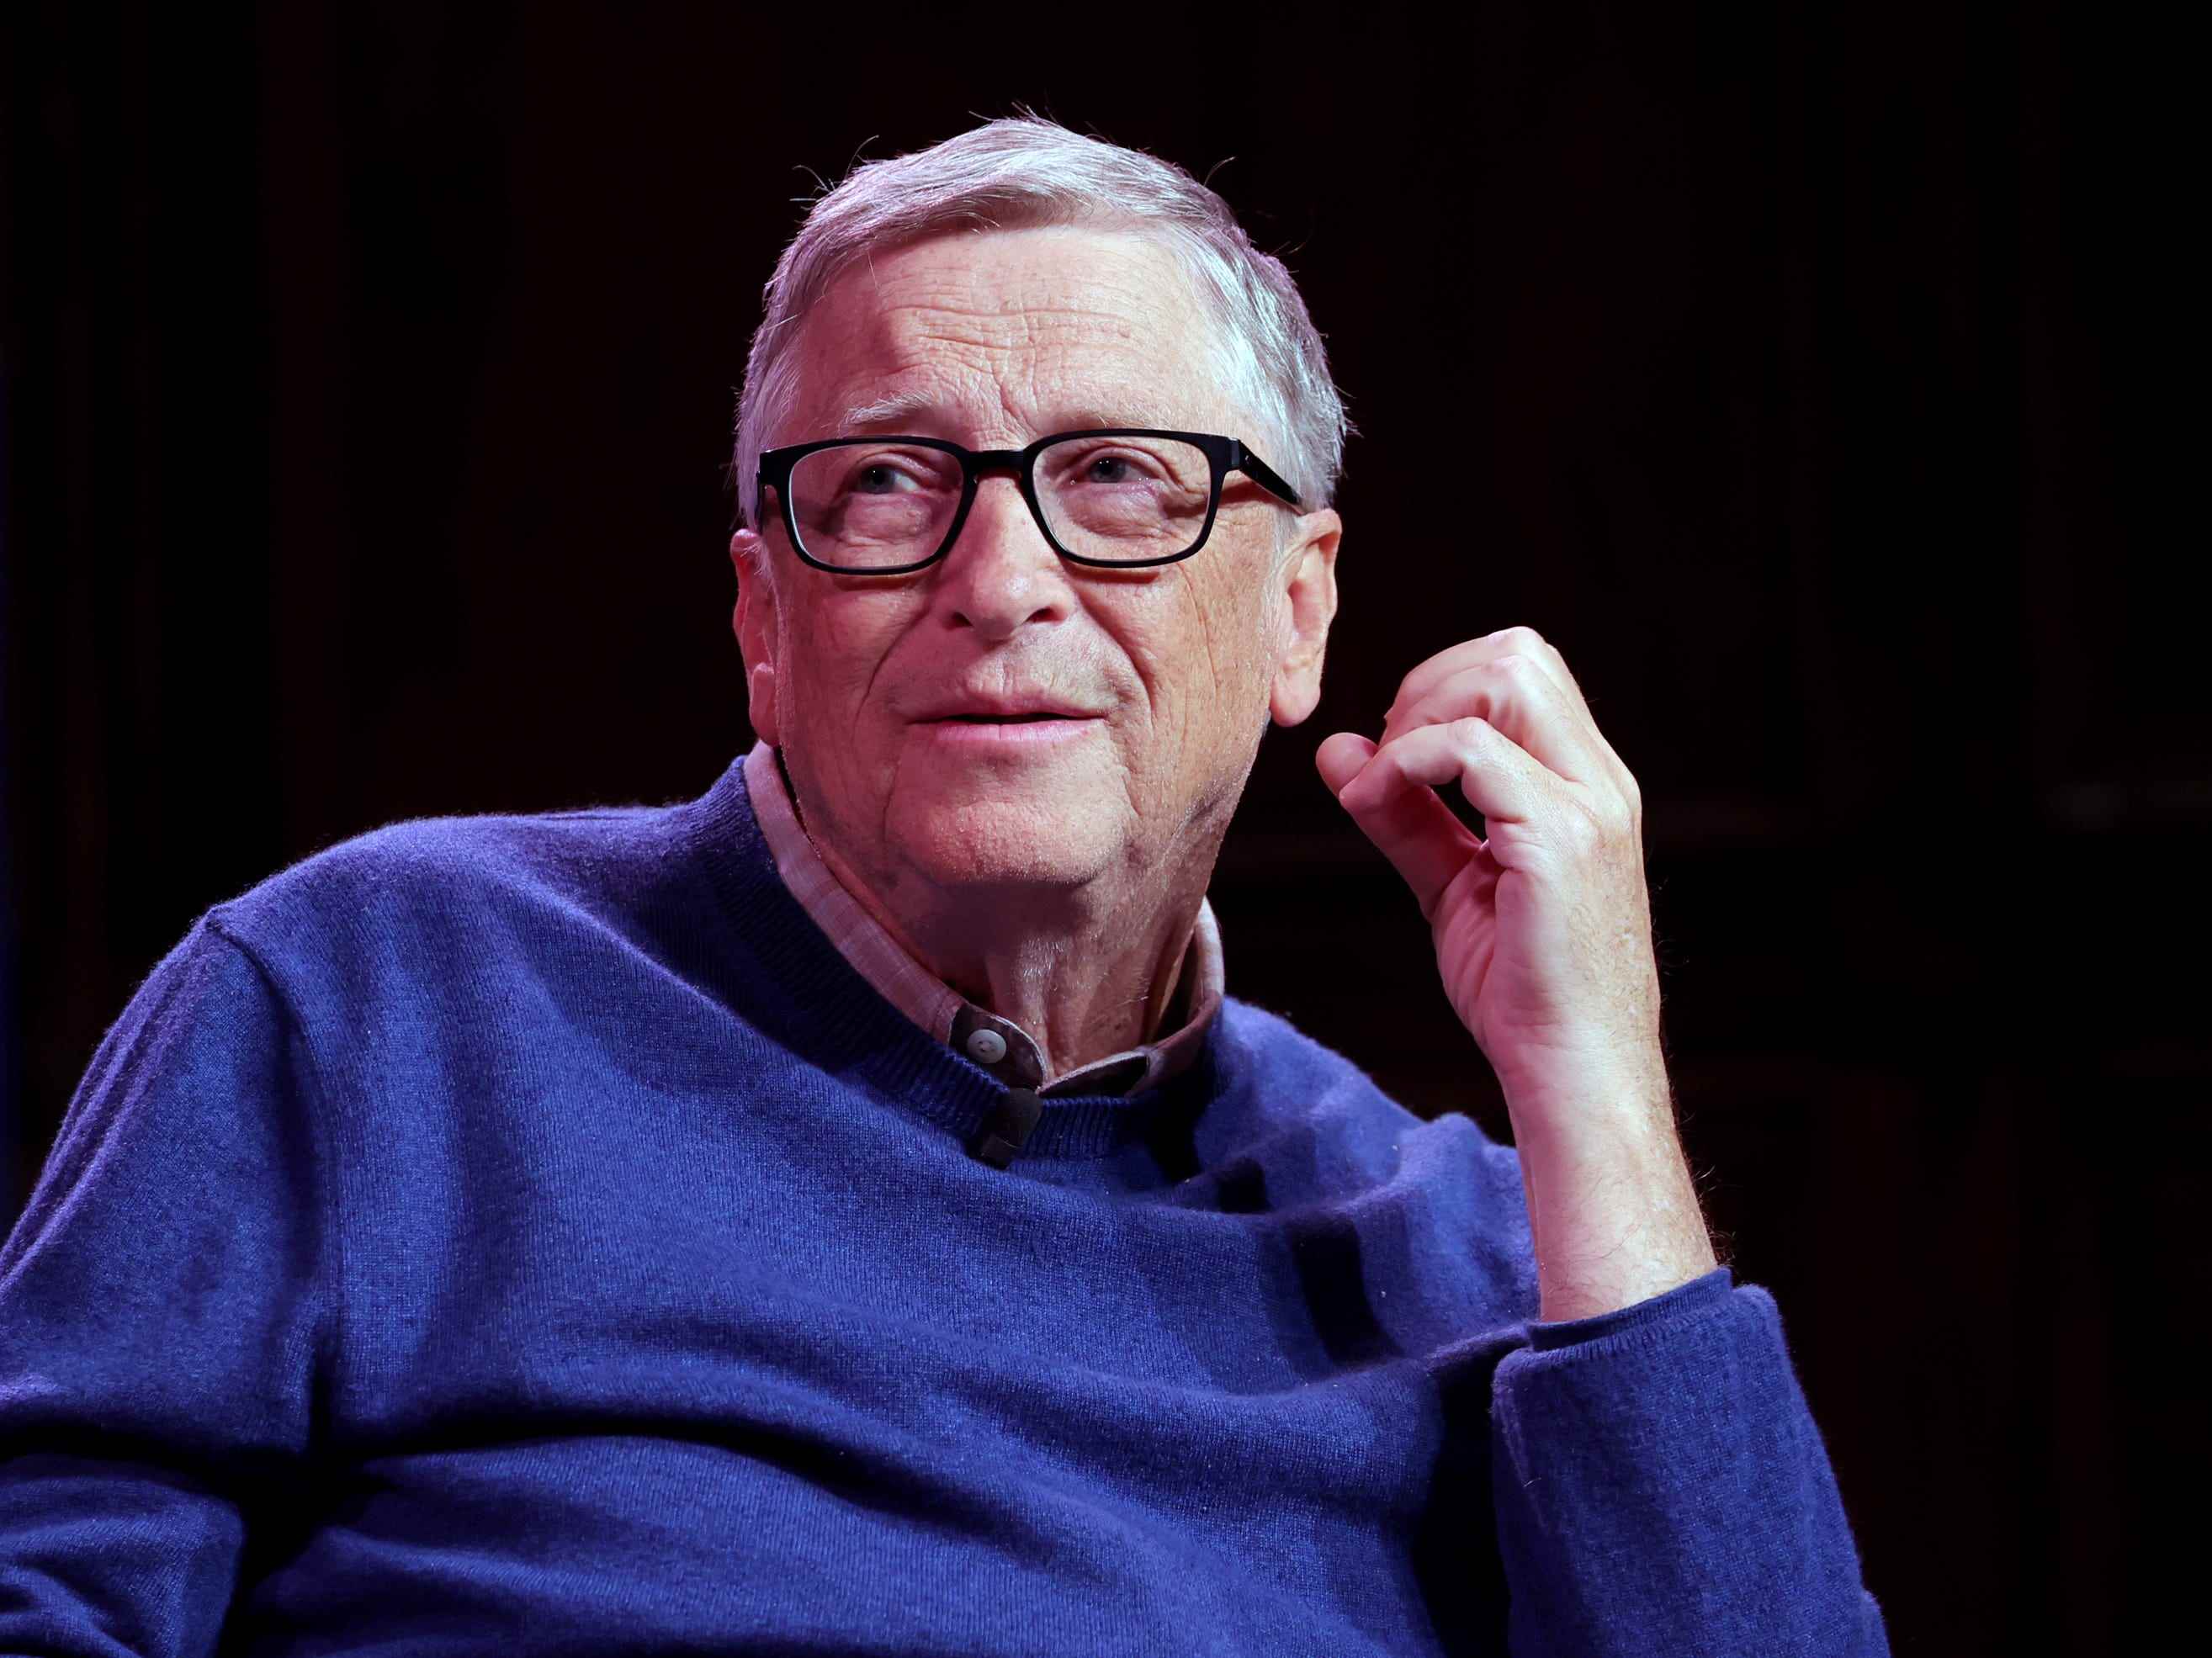 Bill Gates auf der Bühne vor schwarzem Hintergrund.